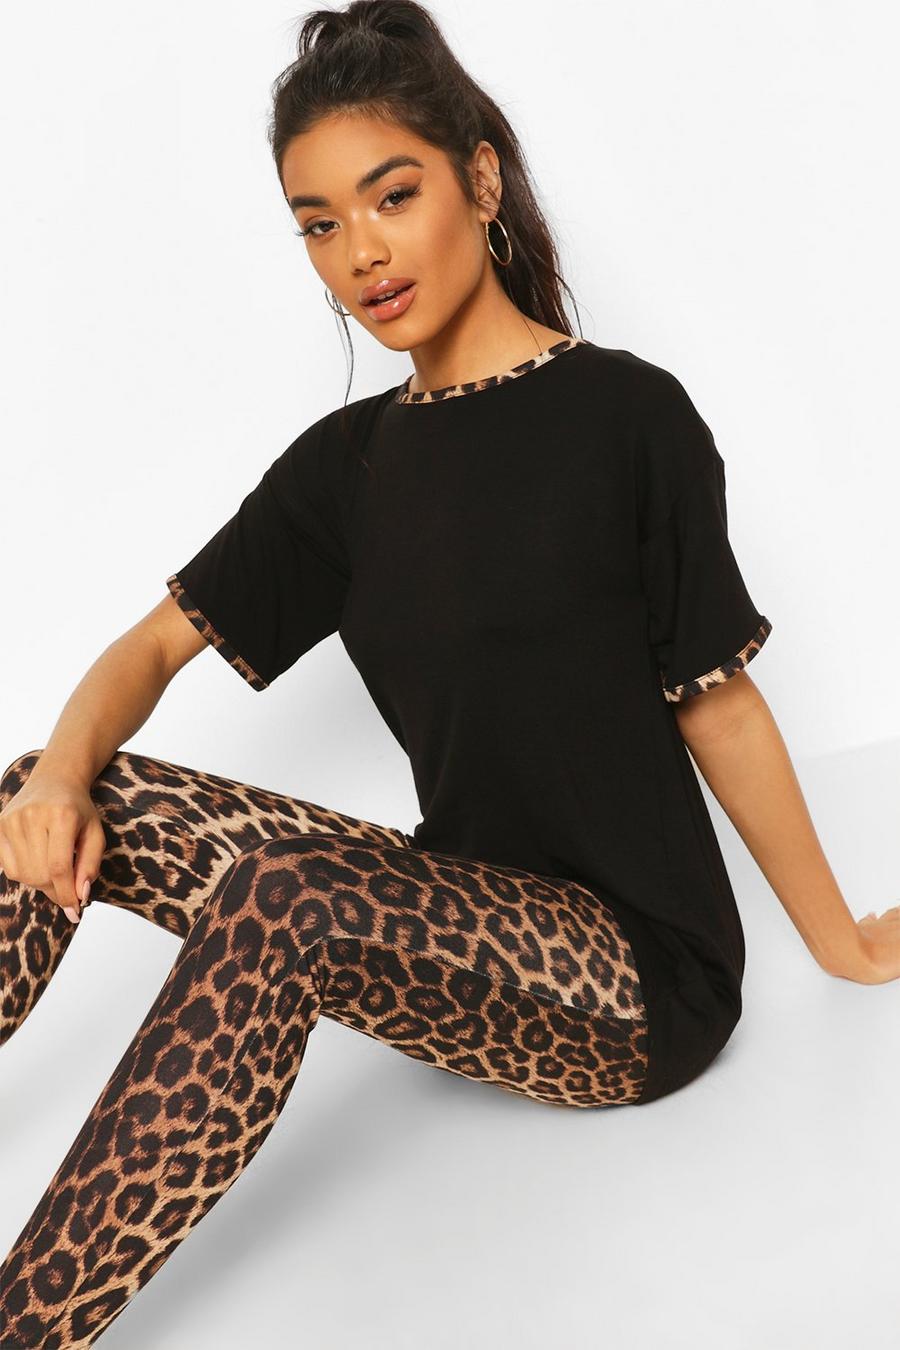 Set pigiama leopardato con legging e bordi a contrasto, Nero negro